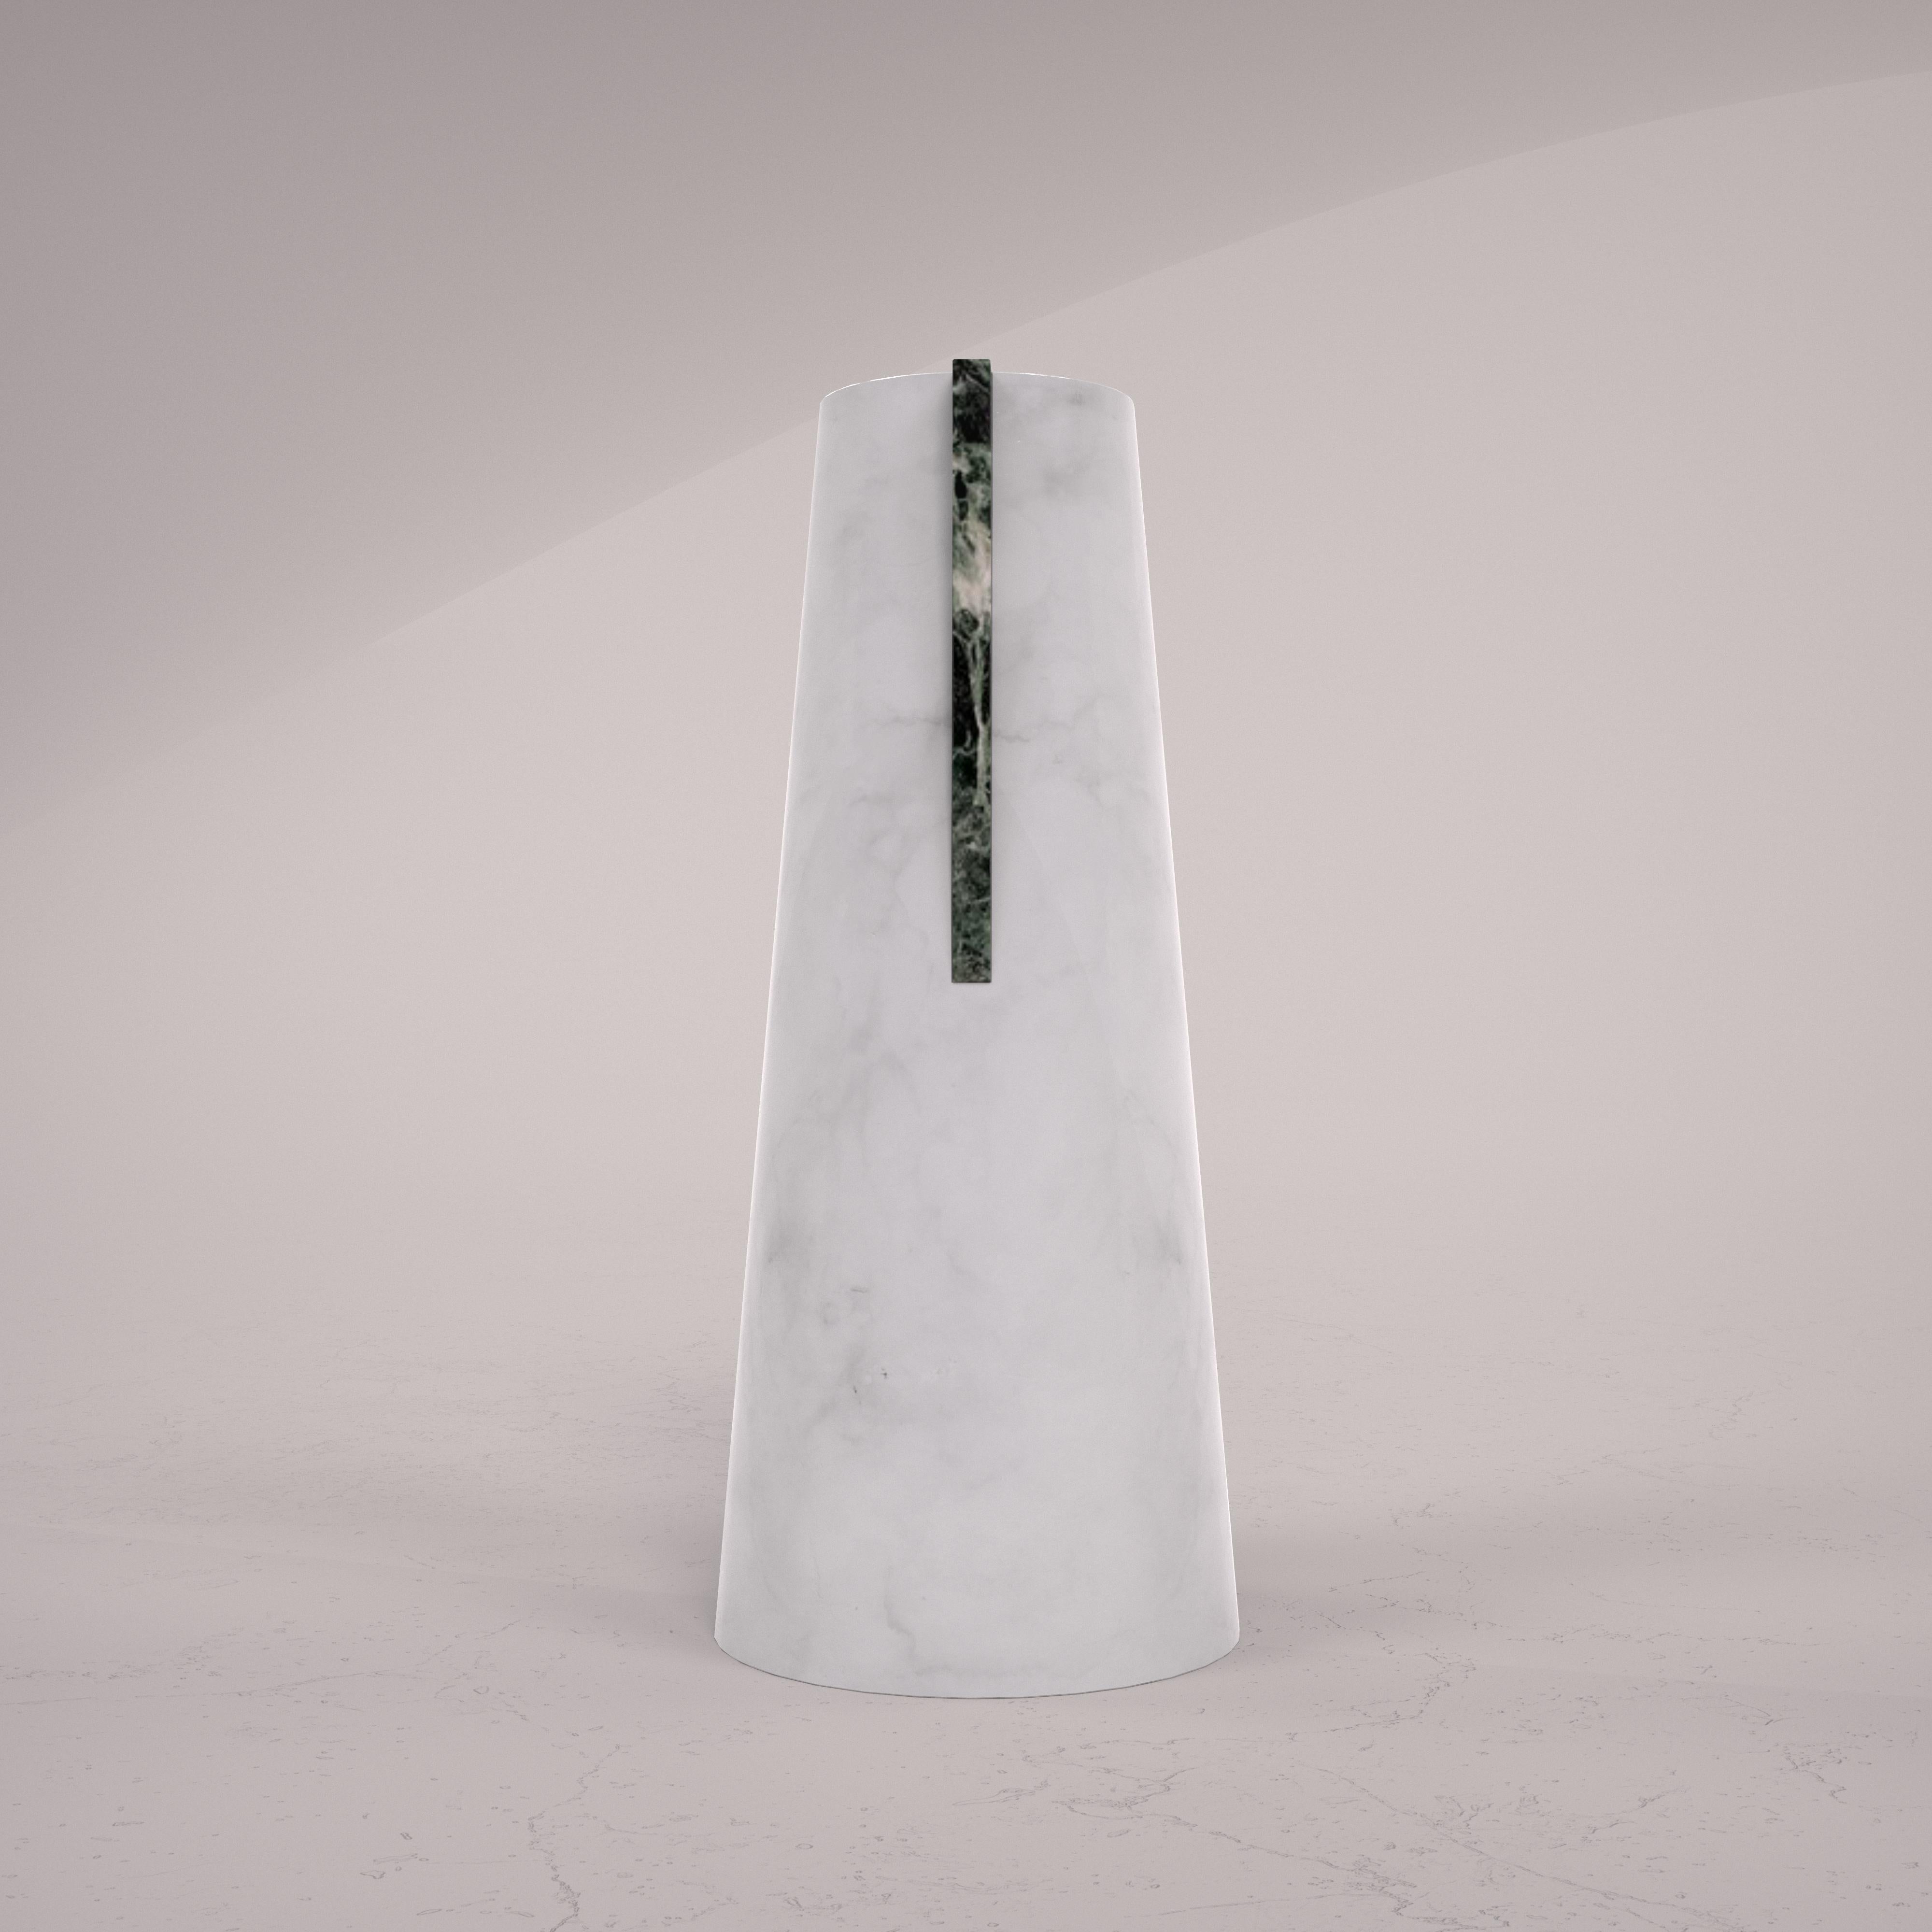 Vase aus sandgestrahltem weißem Carrara-Marmor mit poliertem Verde Alpi-Marmorstecker, handgefertigt in Italien. Das Werk verkörpert das gesamte Wissen und die Herstellungstradition von Bassano del Grappa in Venetien.

Verschiedene Marmorarten und